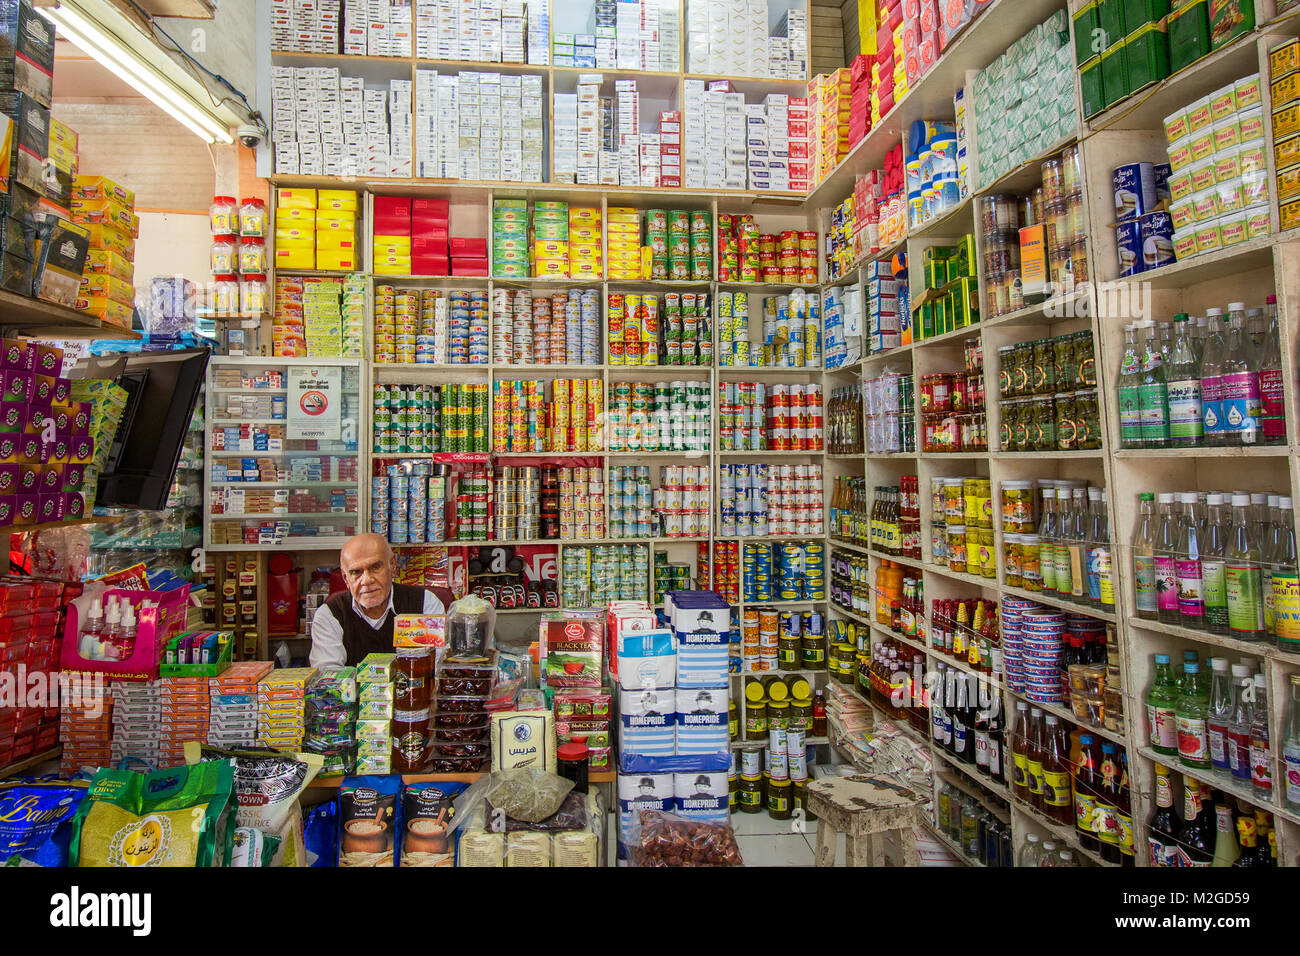 Vue intérieure d'une épicerie à Bahreïn, au Moyen-Orient, avec le propriétaire du magasin Banque D'Images